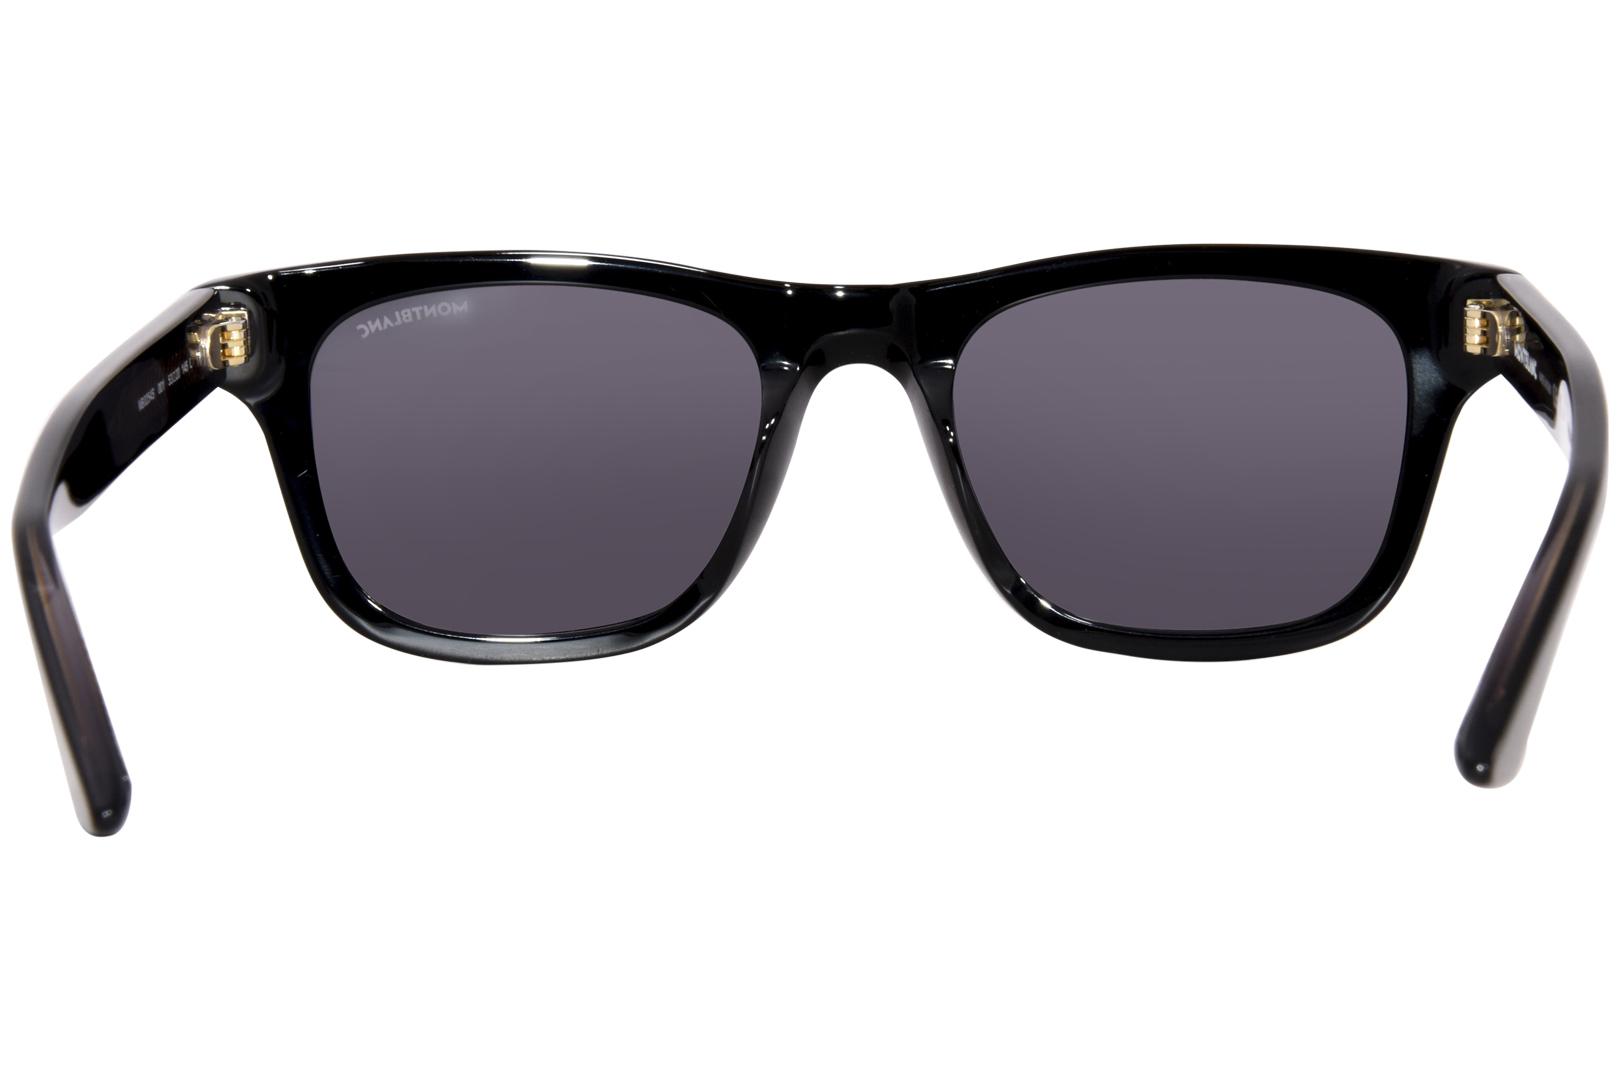 Mont Blanc MB0254S 001 Sunglasses Men's Black/Smoke Rectangle Shape  53-20-145